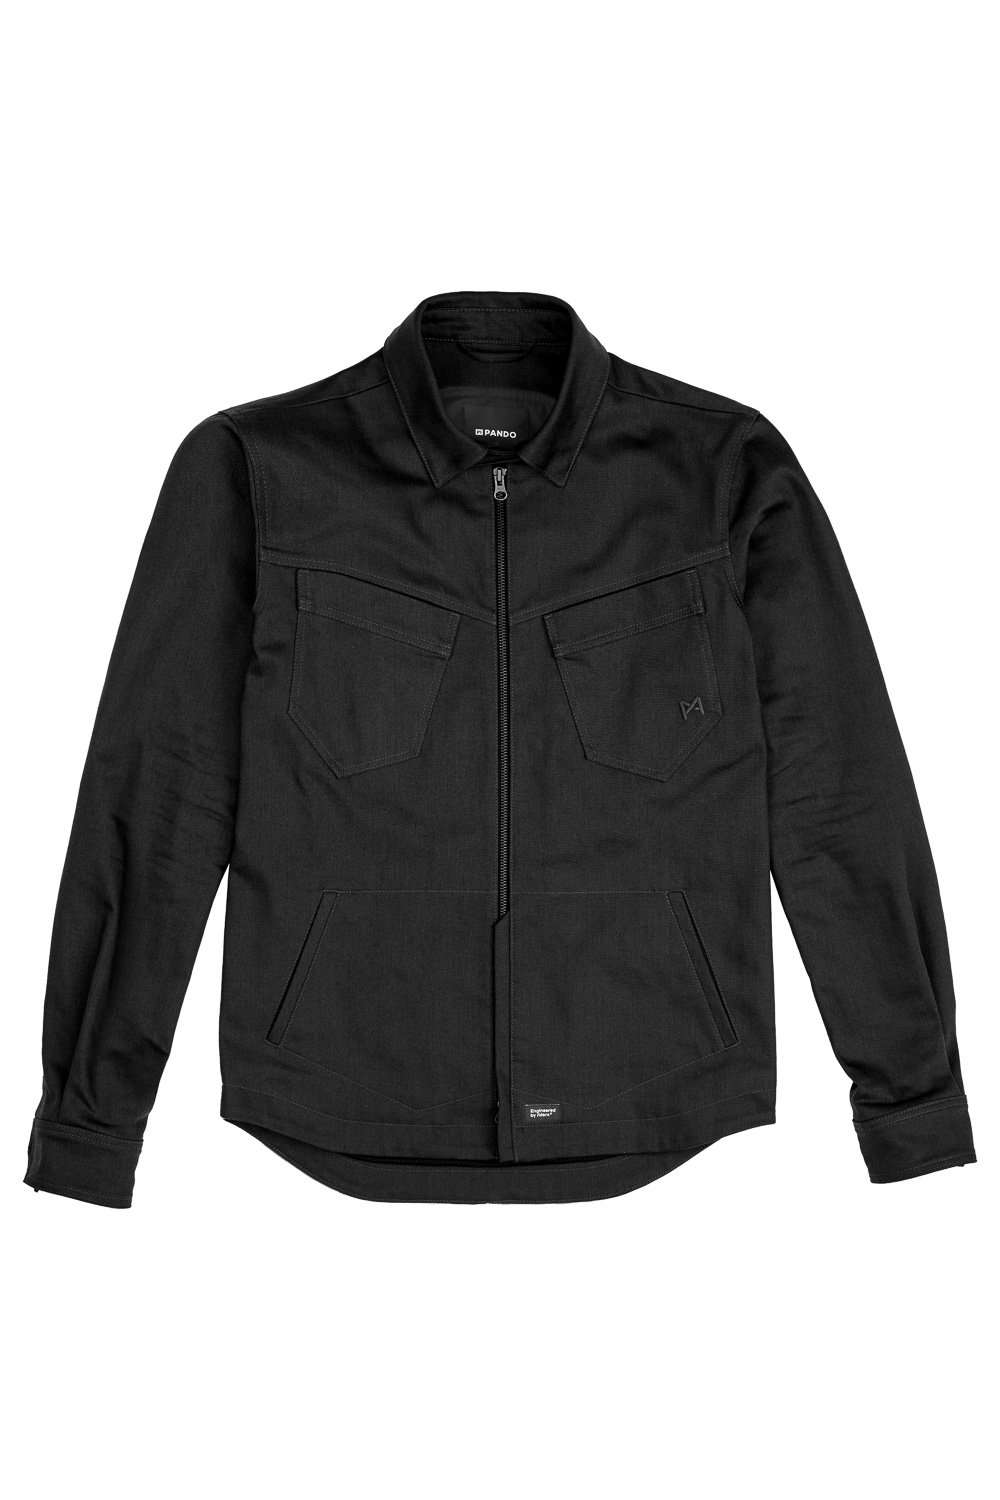 Image of Pando Moto Capo Cor 03 Shirt - Unisex Slim-Fit Cordura Jacke Größe M